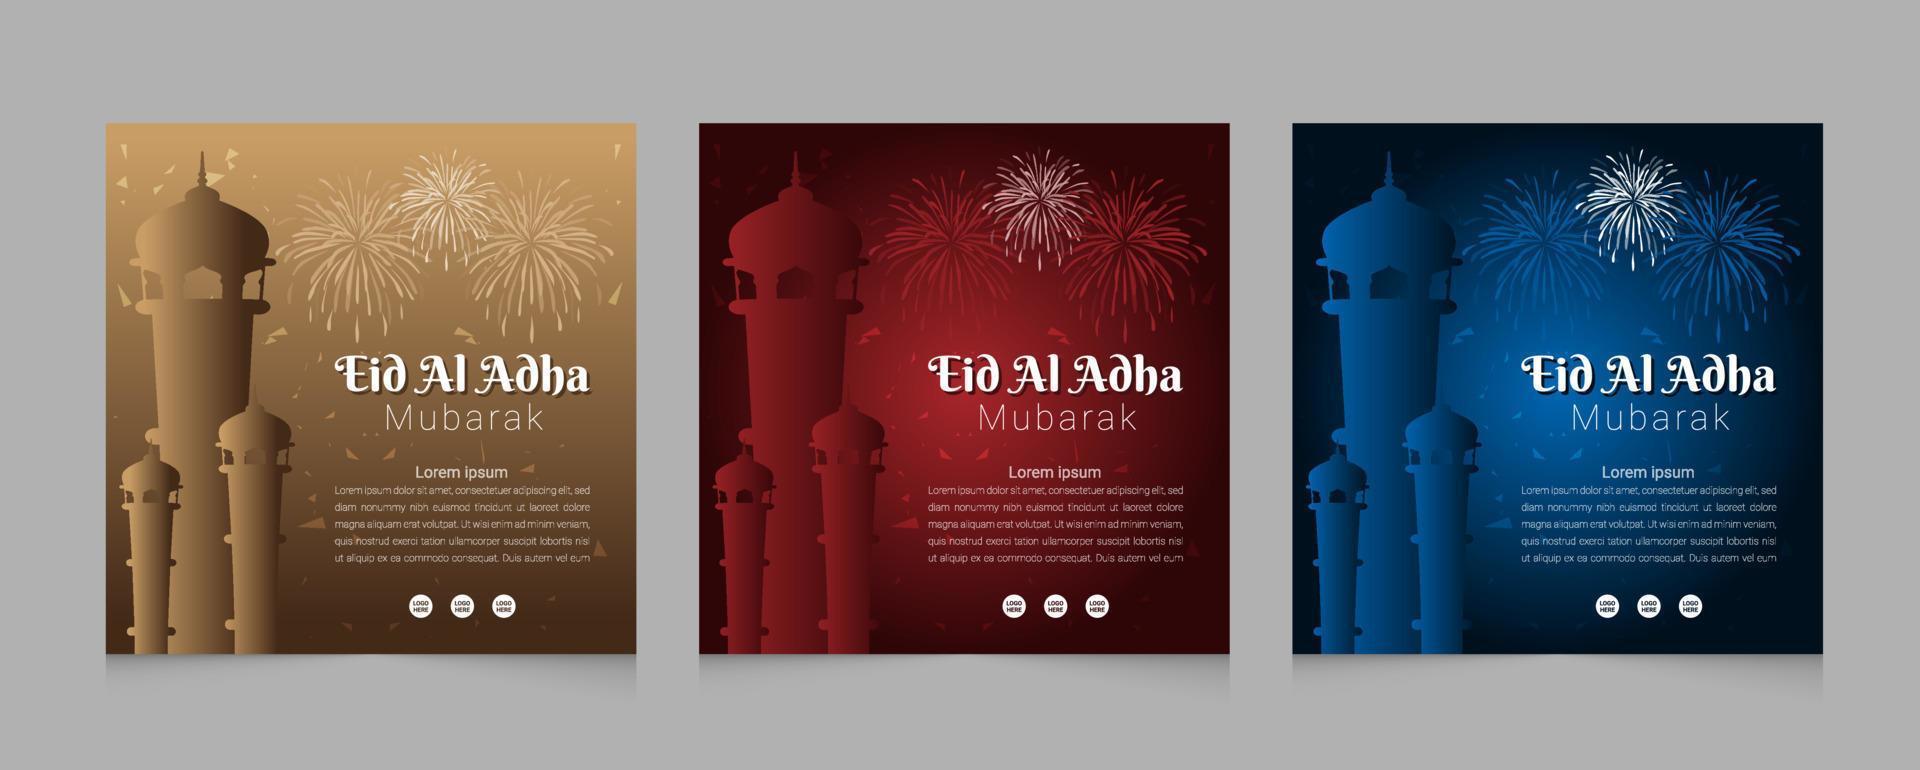 conjunto de diseño de plantilla web de publicación de redes sociales de eid al adha vector